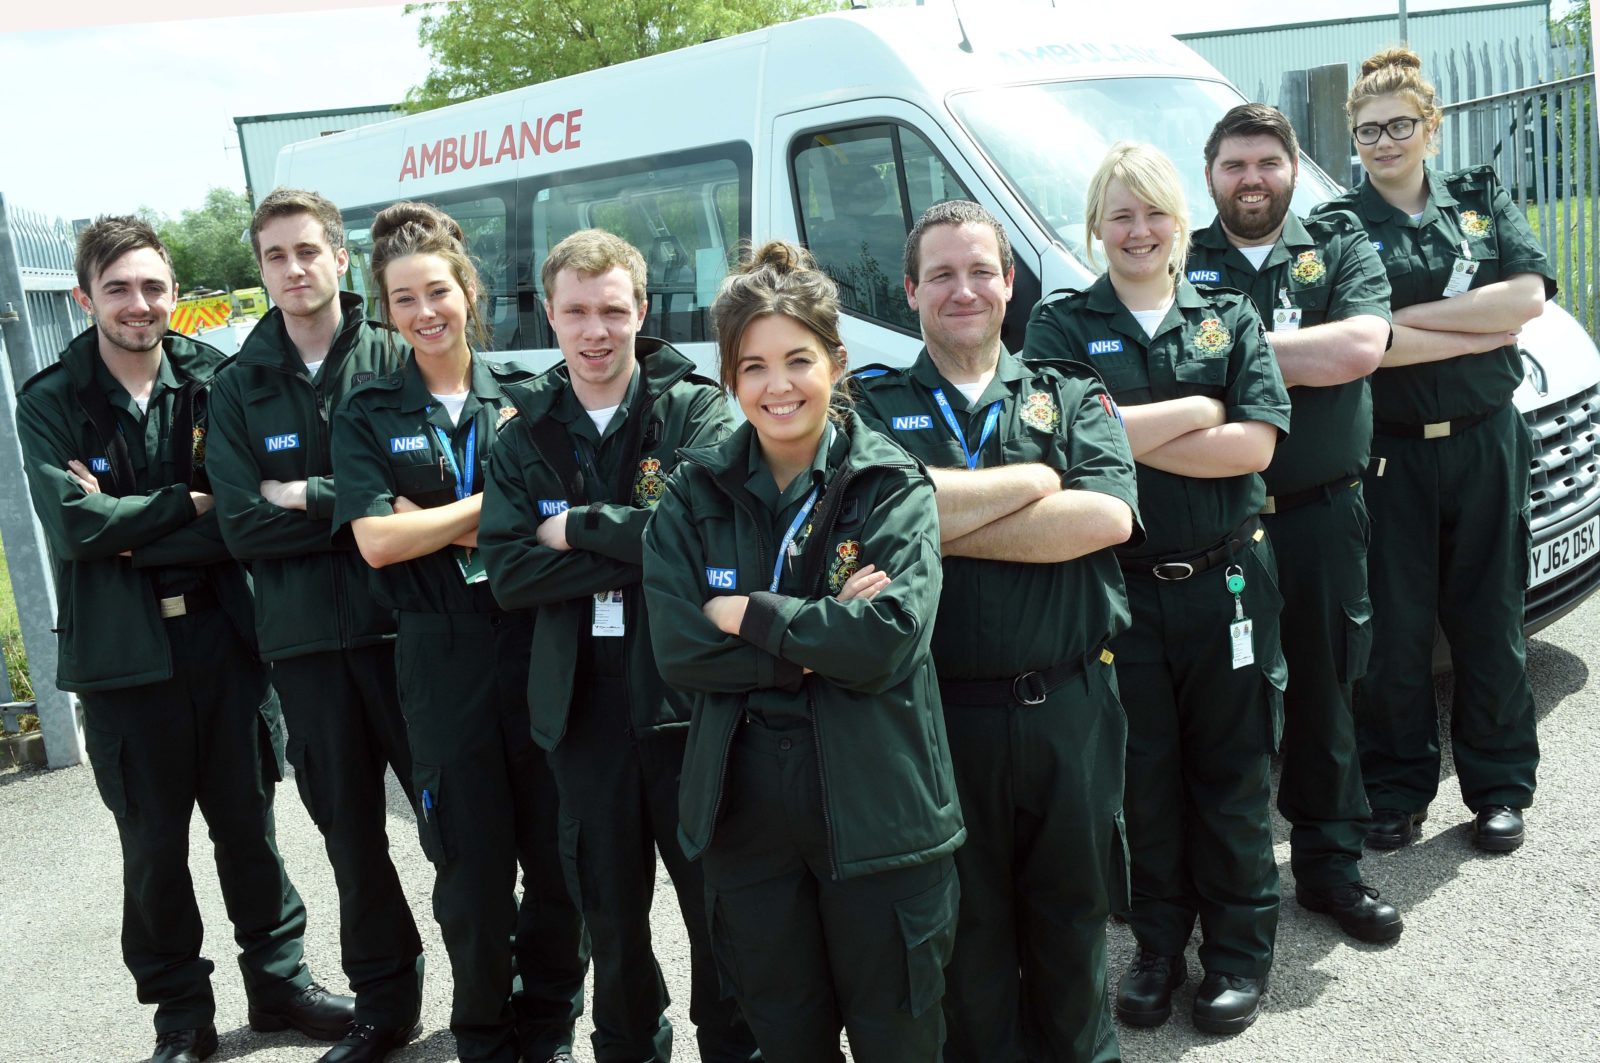 Apprentices deliver vital health care service